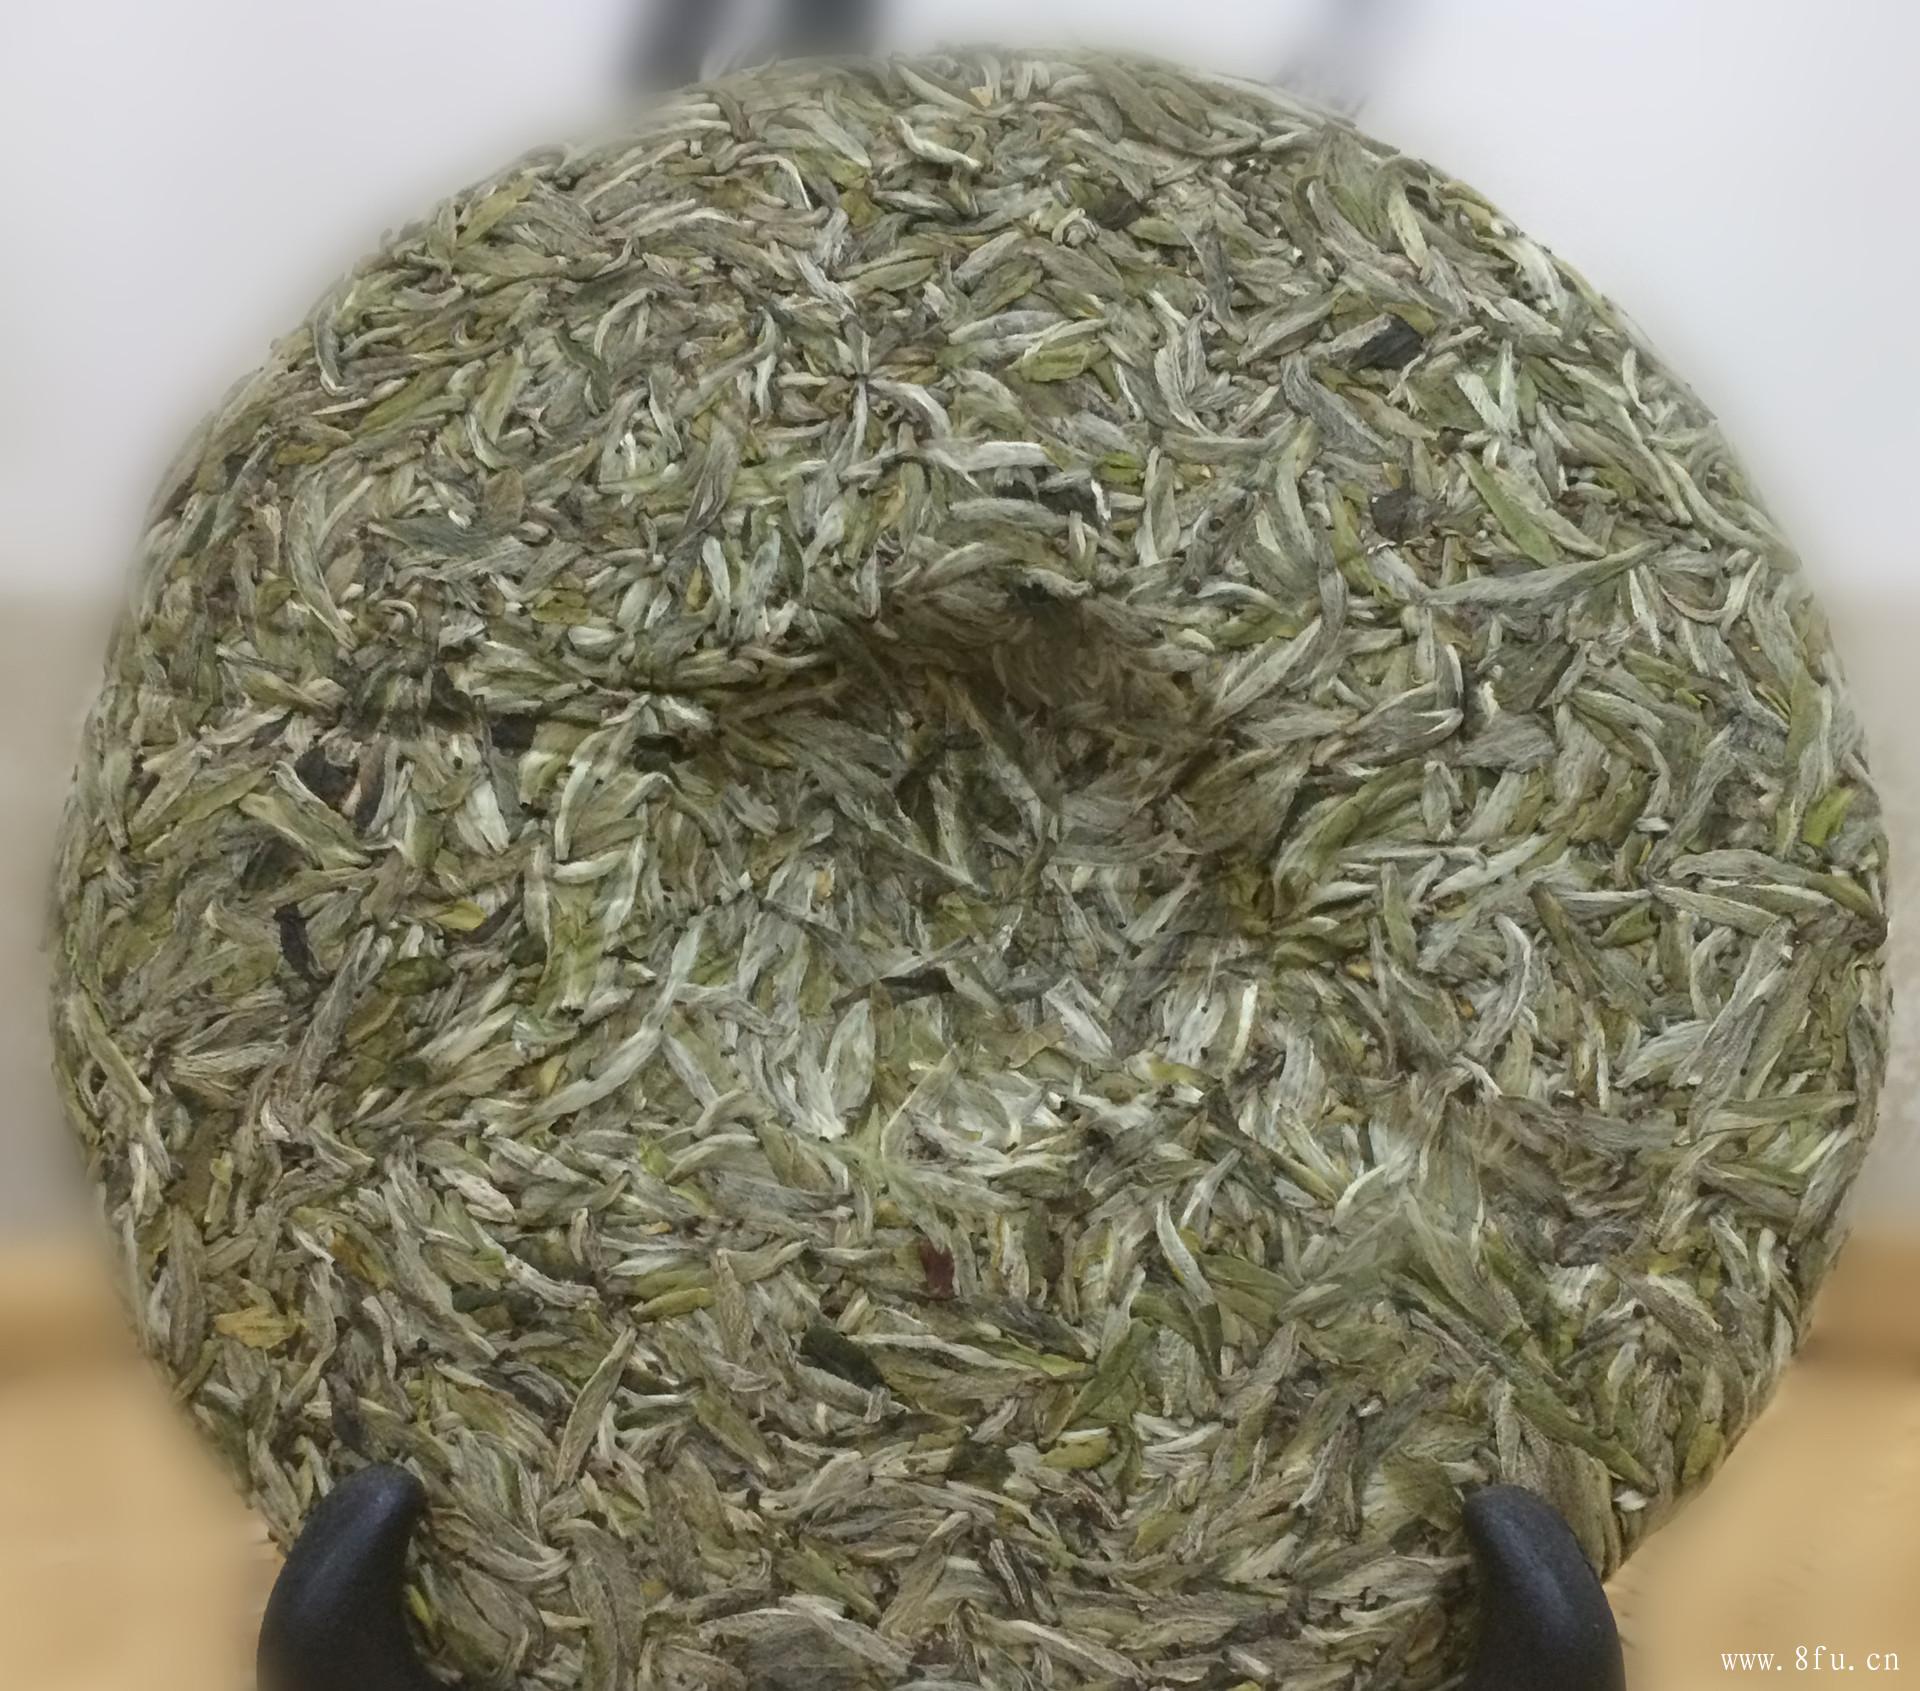 福鼎白茶的发酵程度